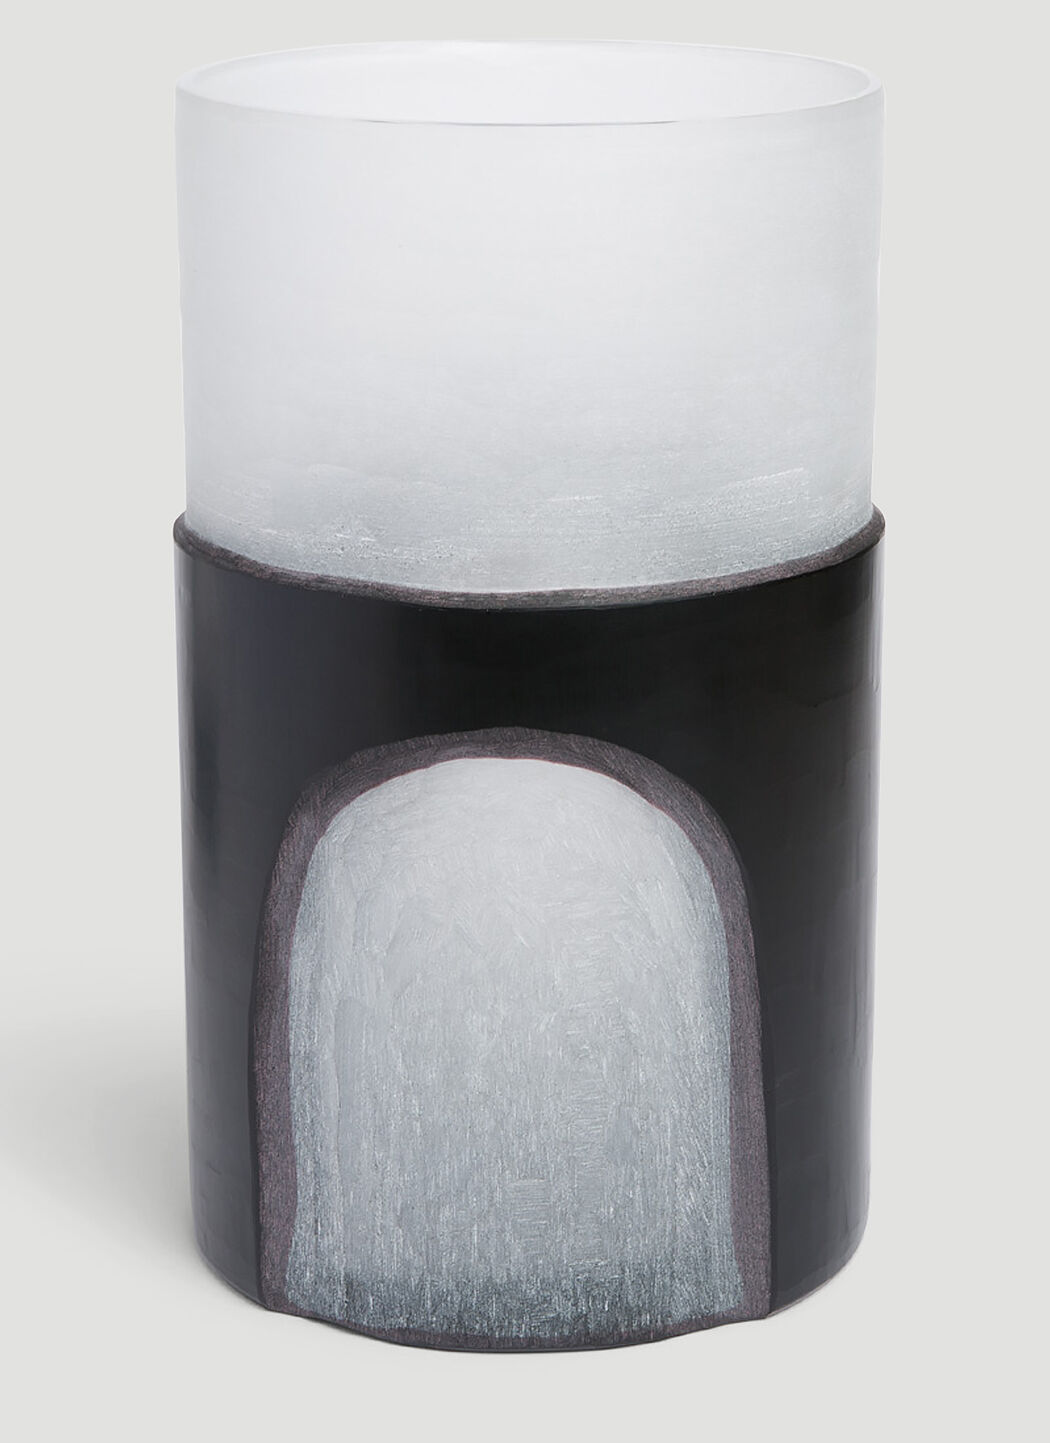 Marloe Marloe Medium Carved Vase Cream rlo0351006